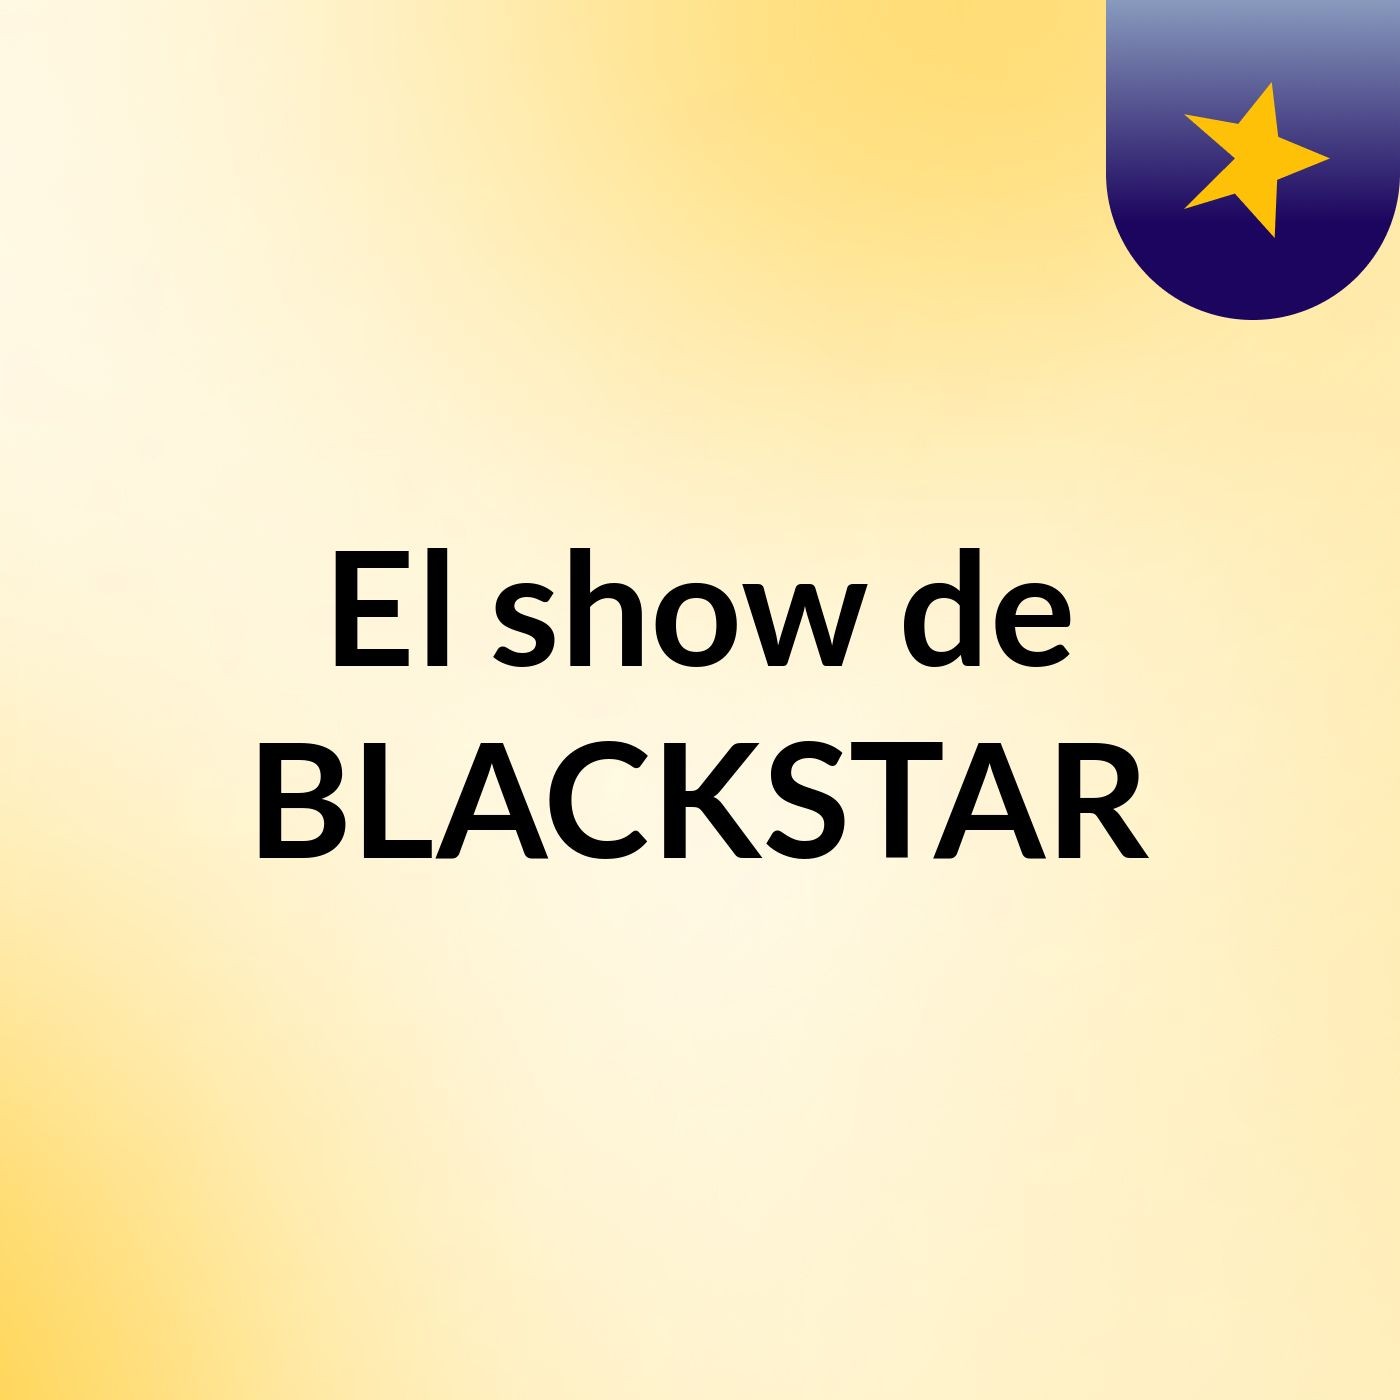 El show de BLACKSTAR